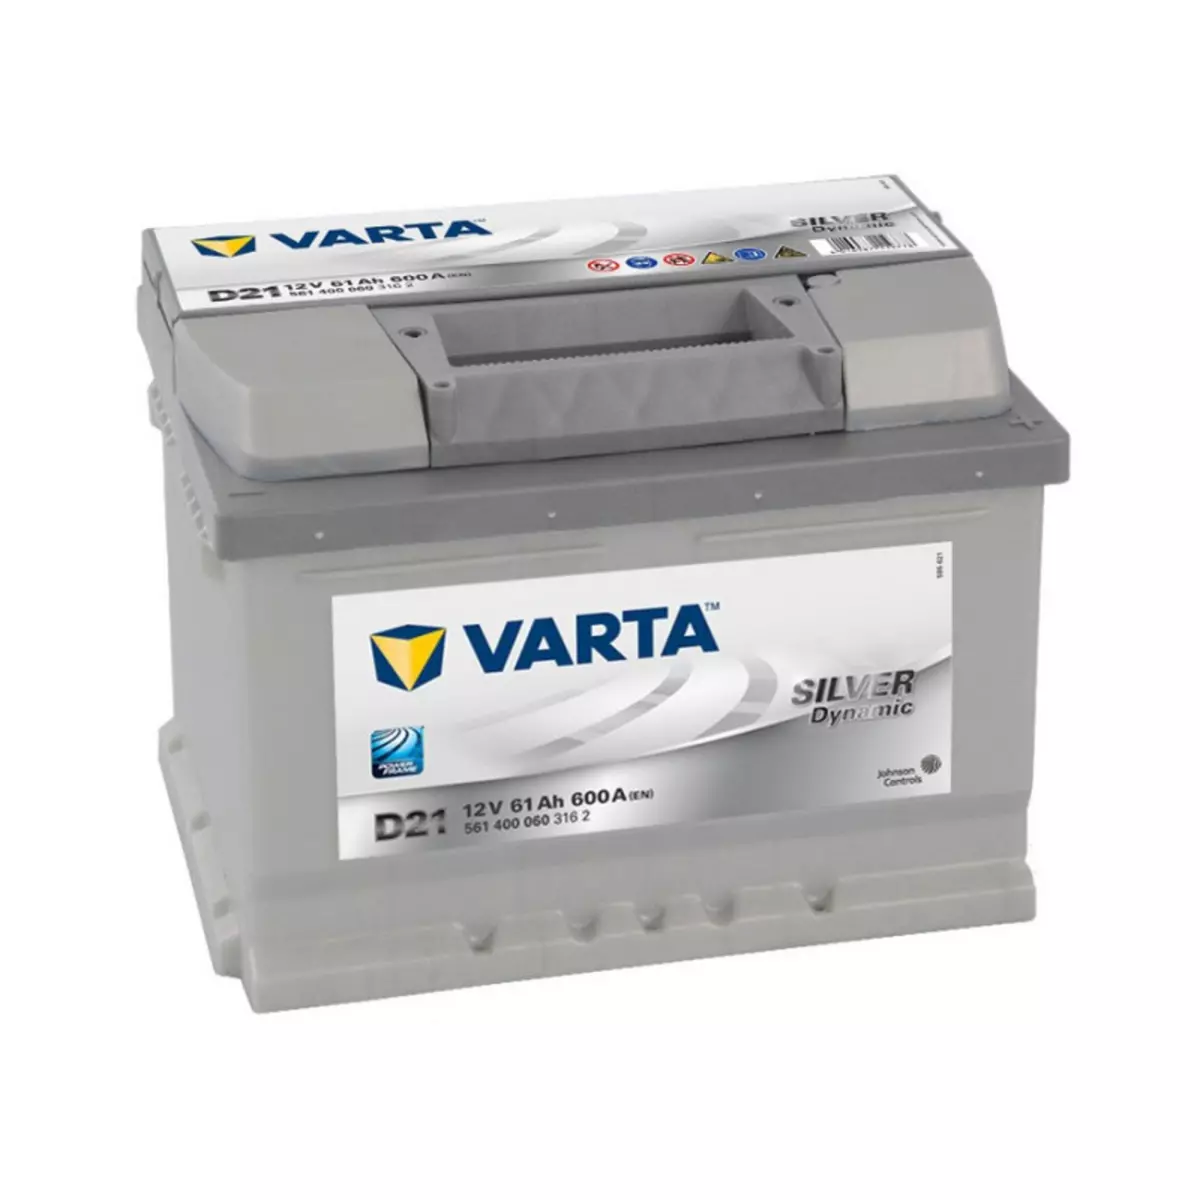 Varta Batterie Varta silver Dynamic D21 12v 61ah 610A 561400060